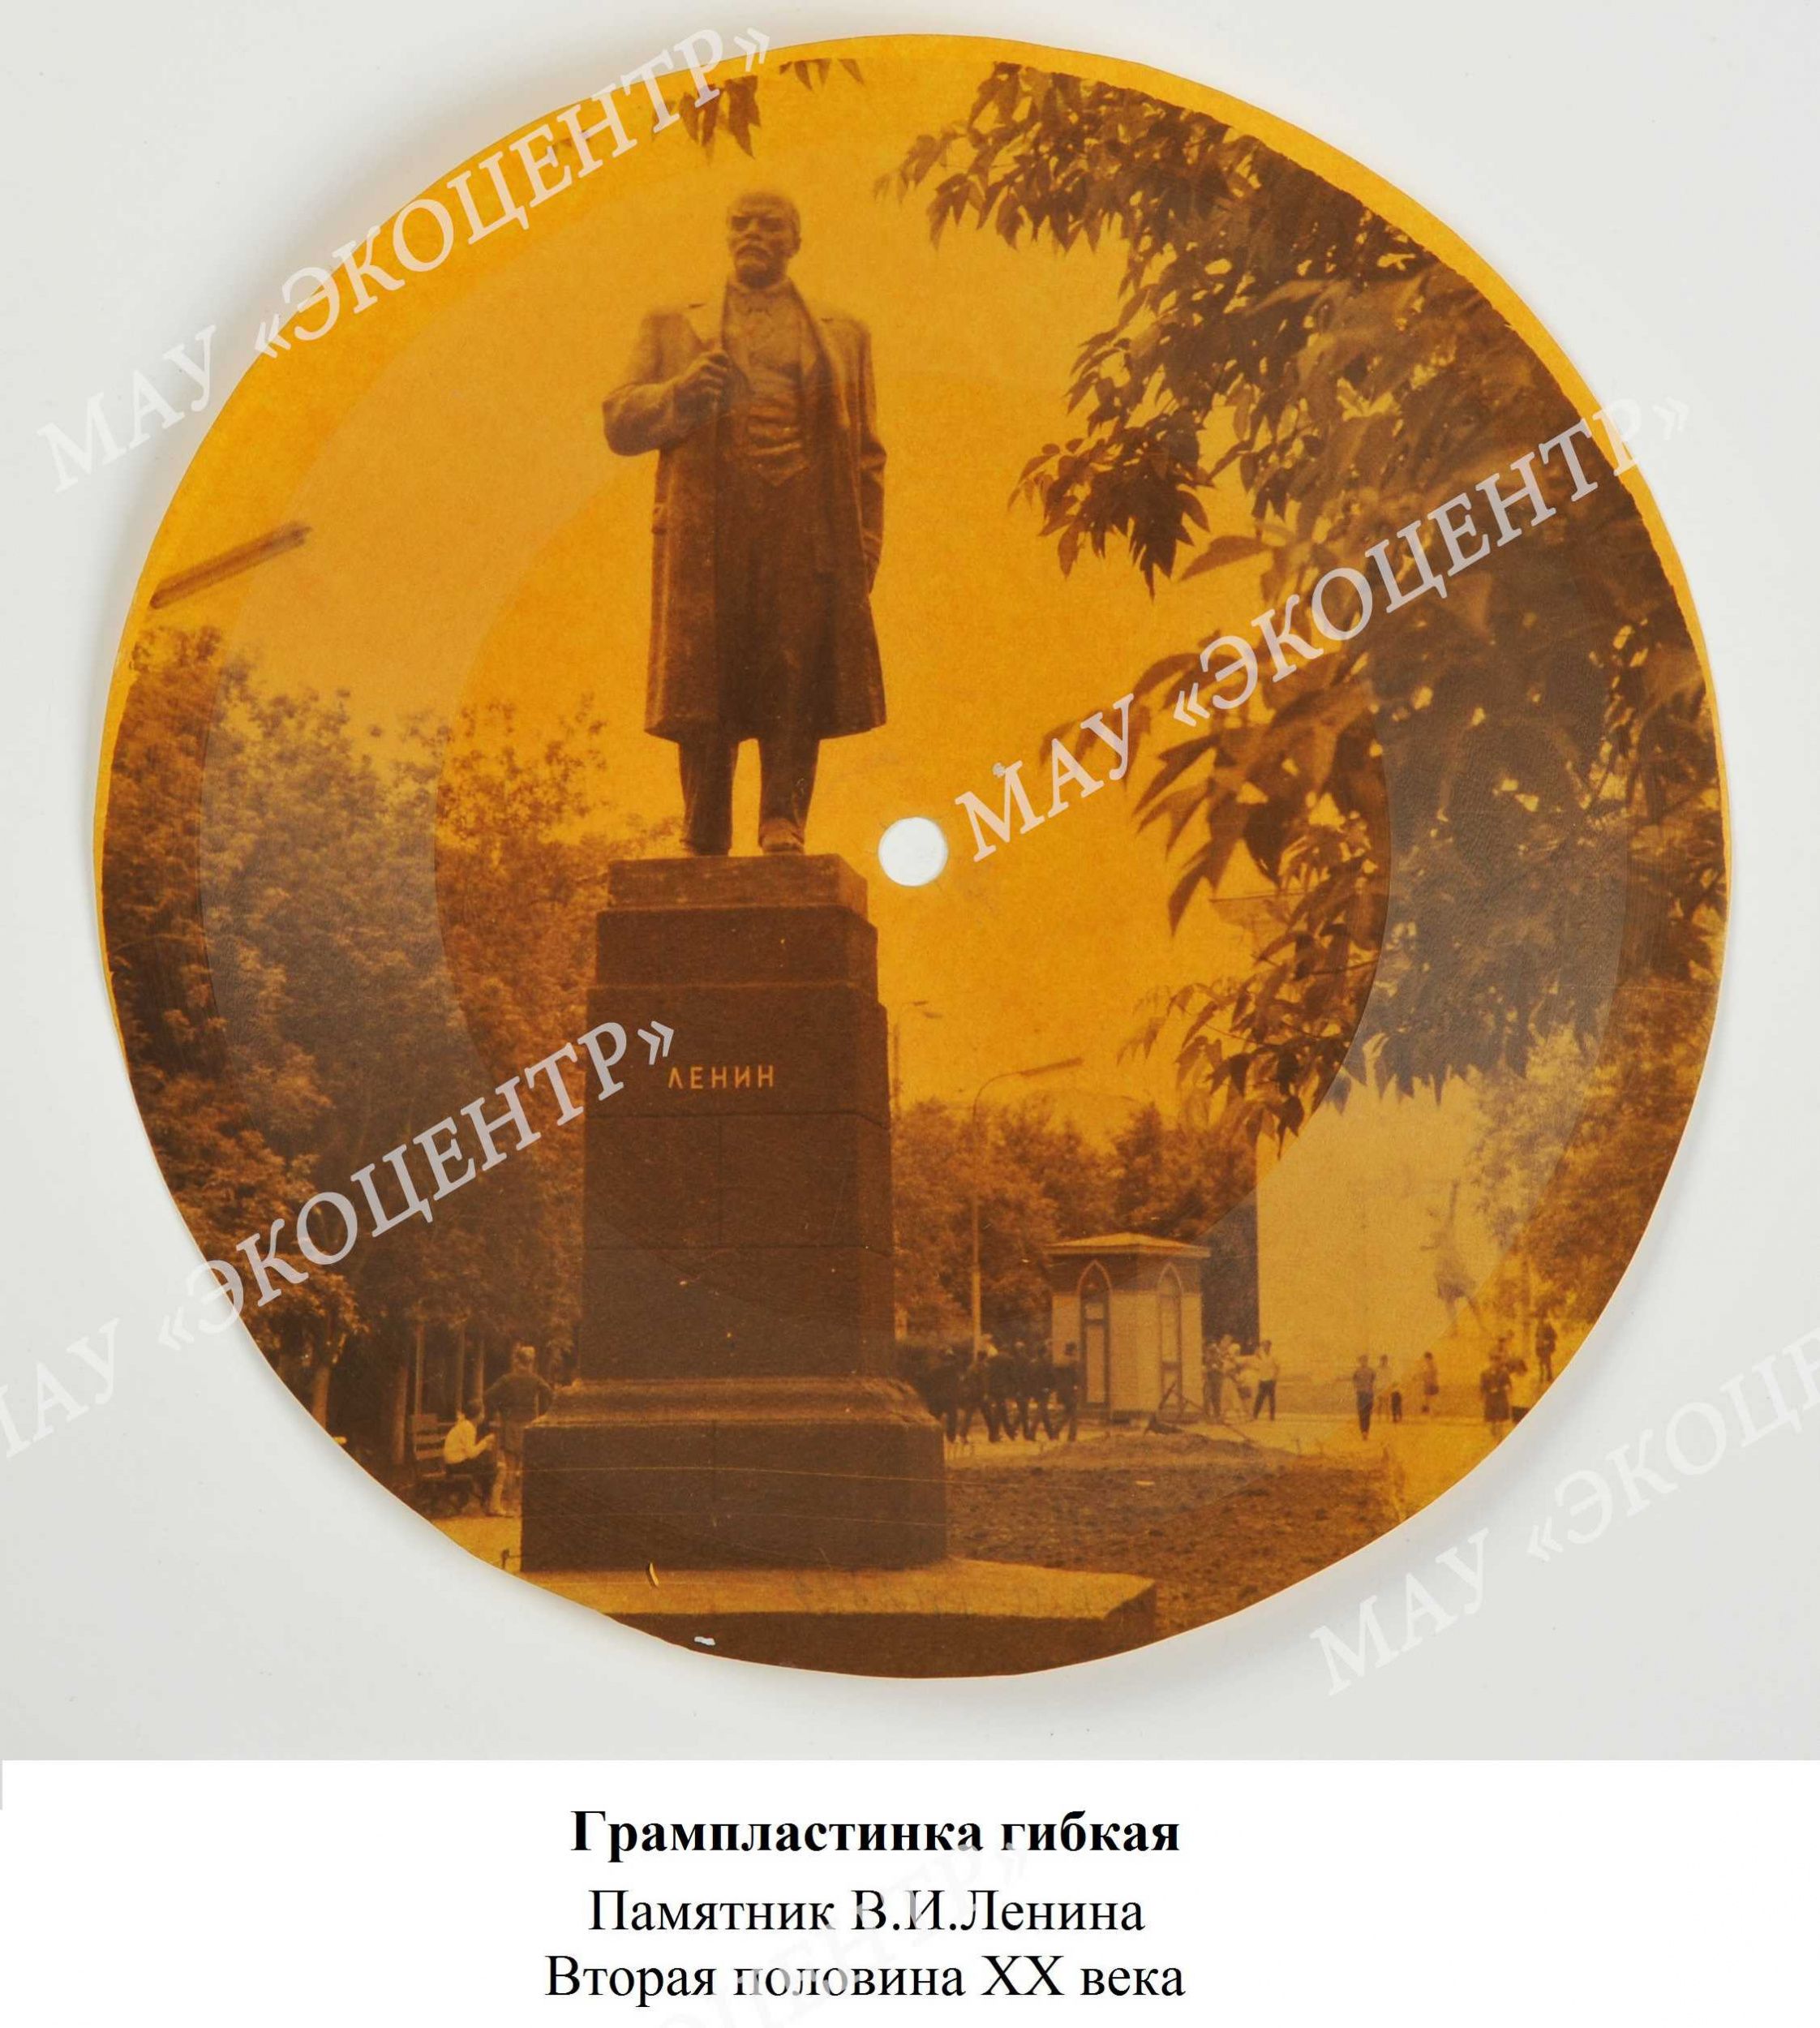 Грампластинка гибкая / Памятник В.И.Ленина / Вторая половина XX века